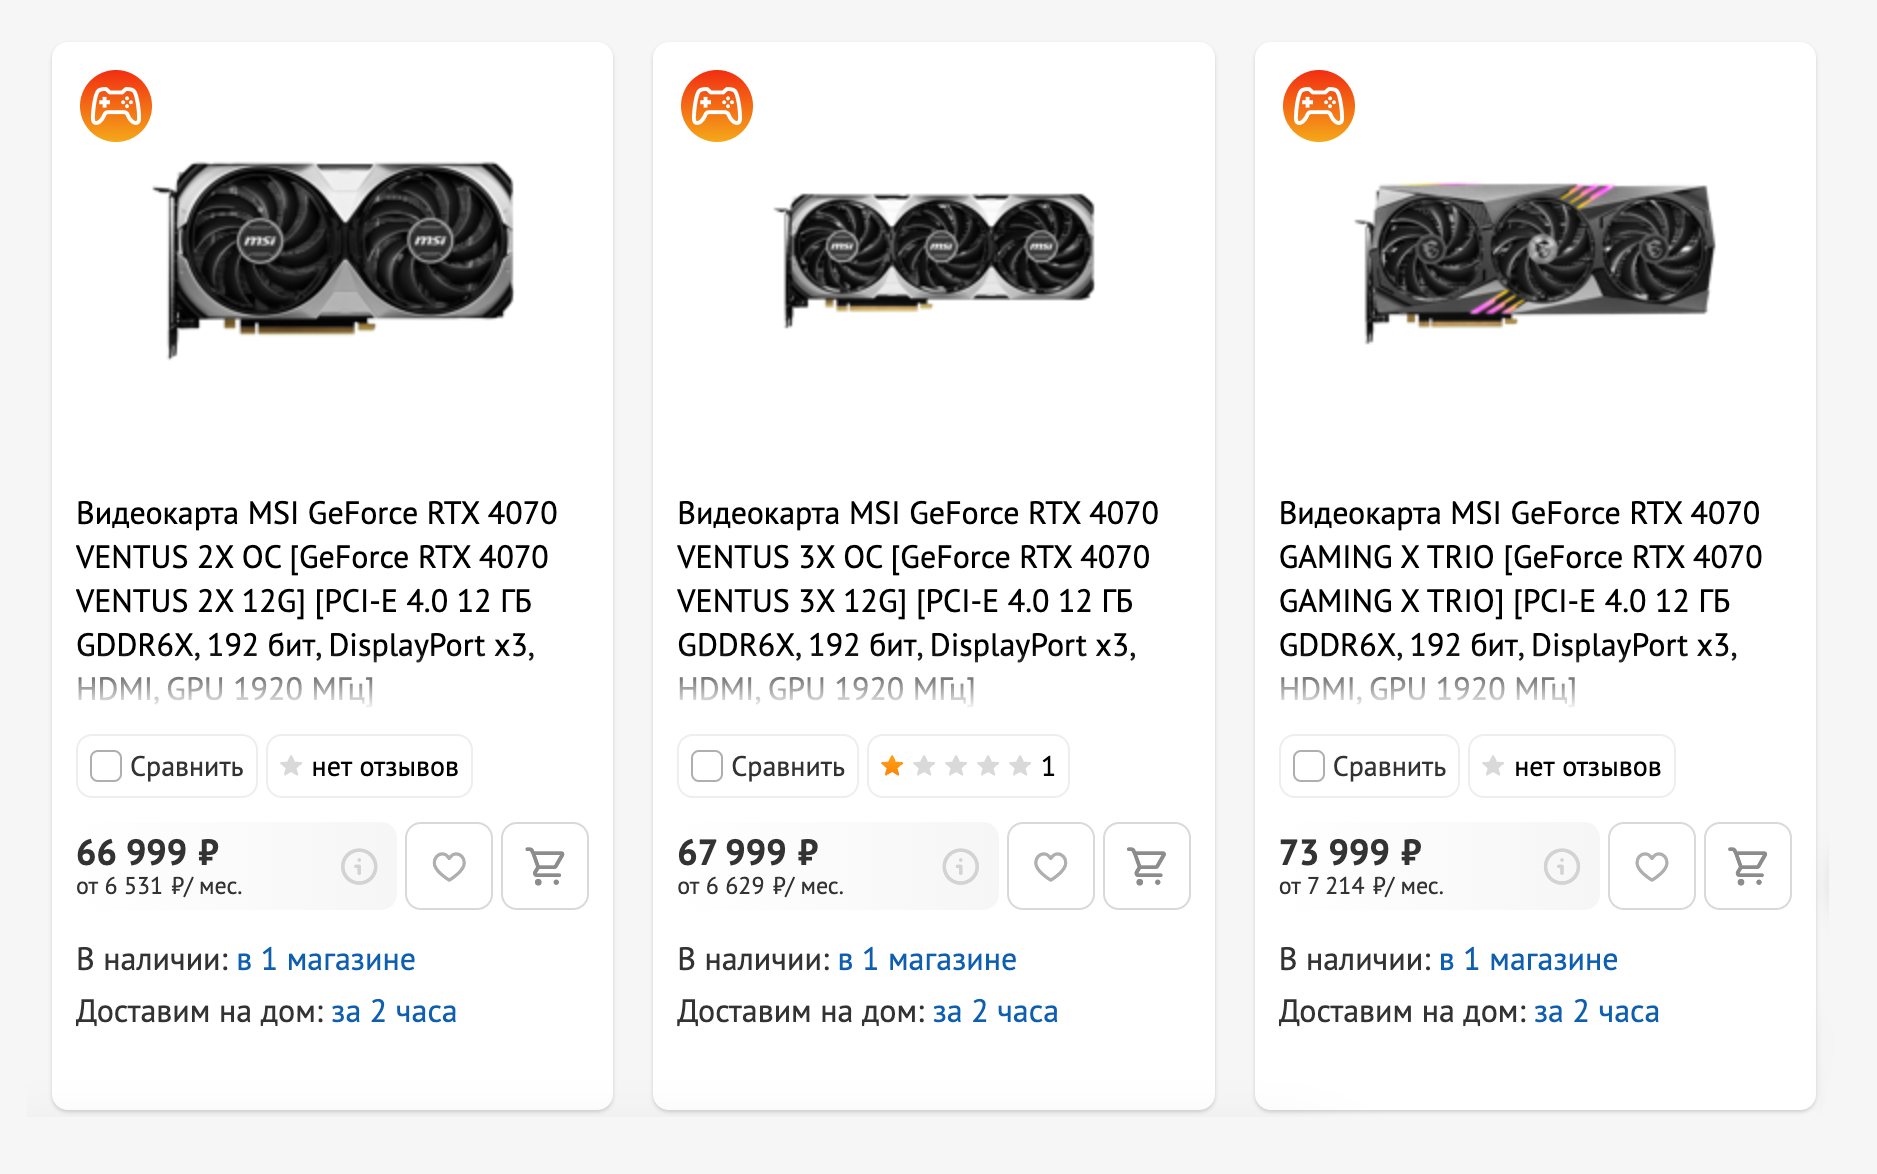 Видеокарты GeForce RTX 4070 достаточно «холодные», поэтому их можно спокойно покупать в компактном дизайне с двумя вентиляторами. Источник: dns-shop.ru